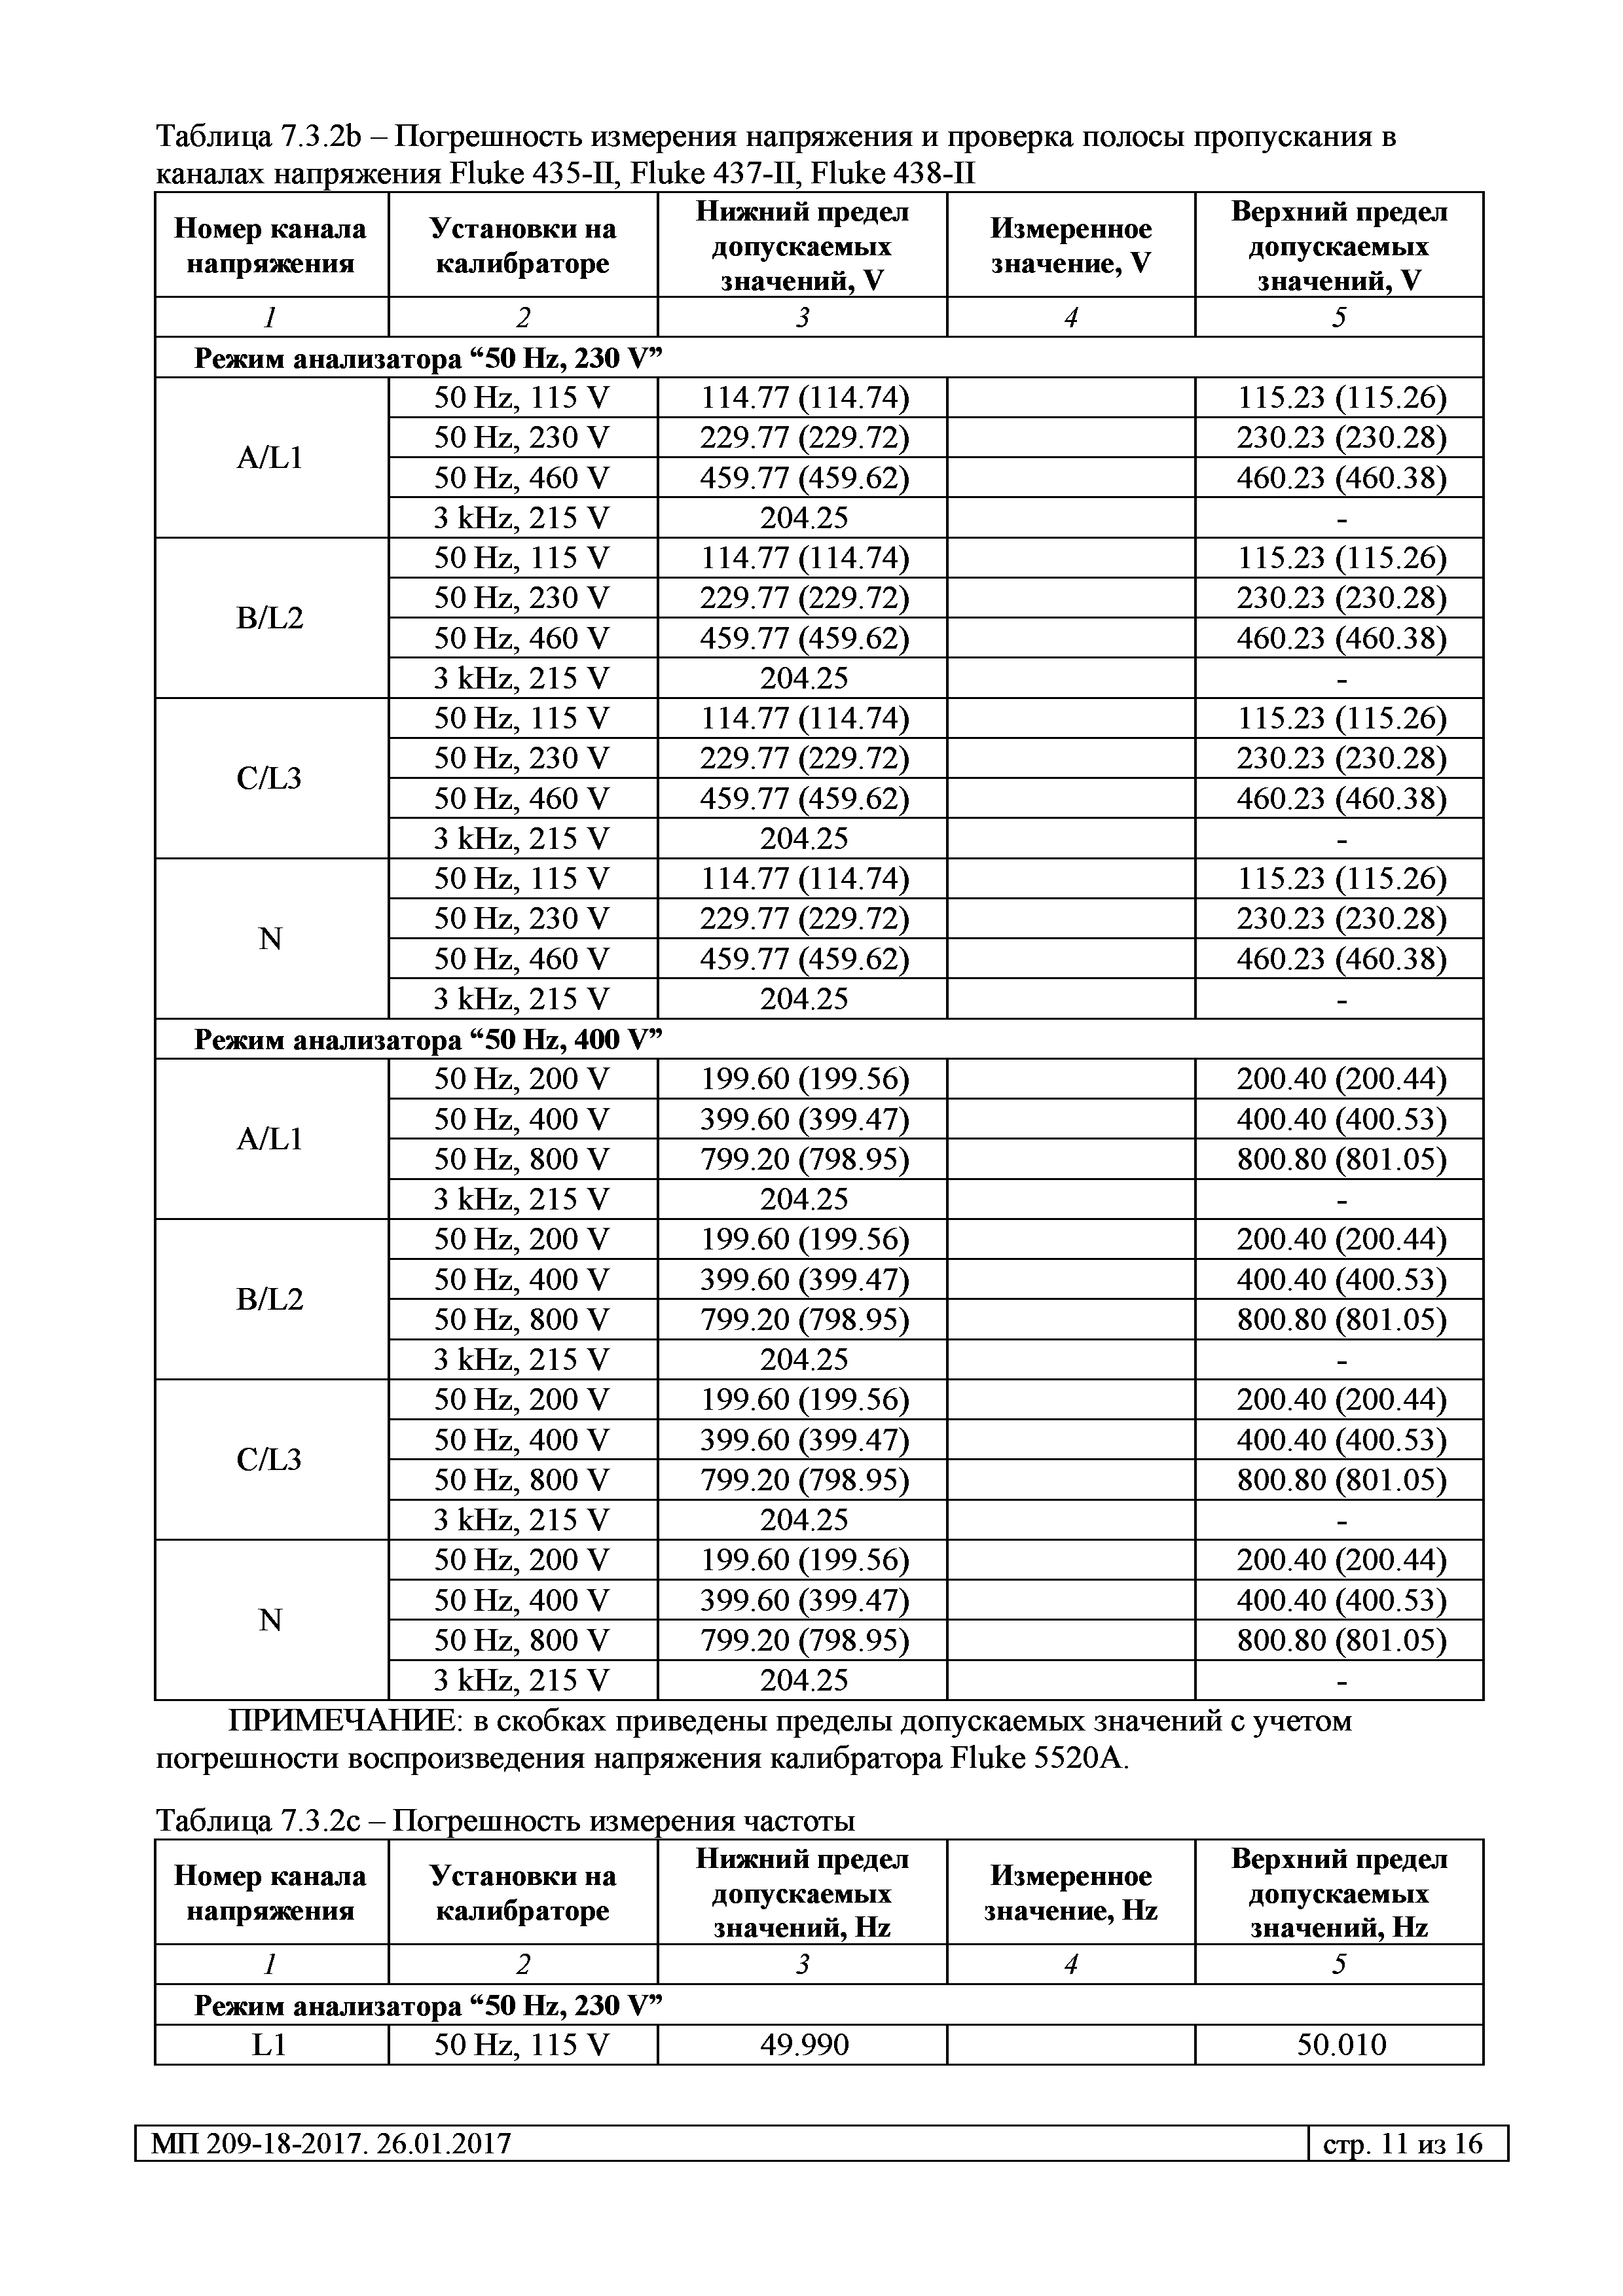 МП 209-18-2017